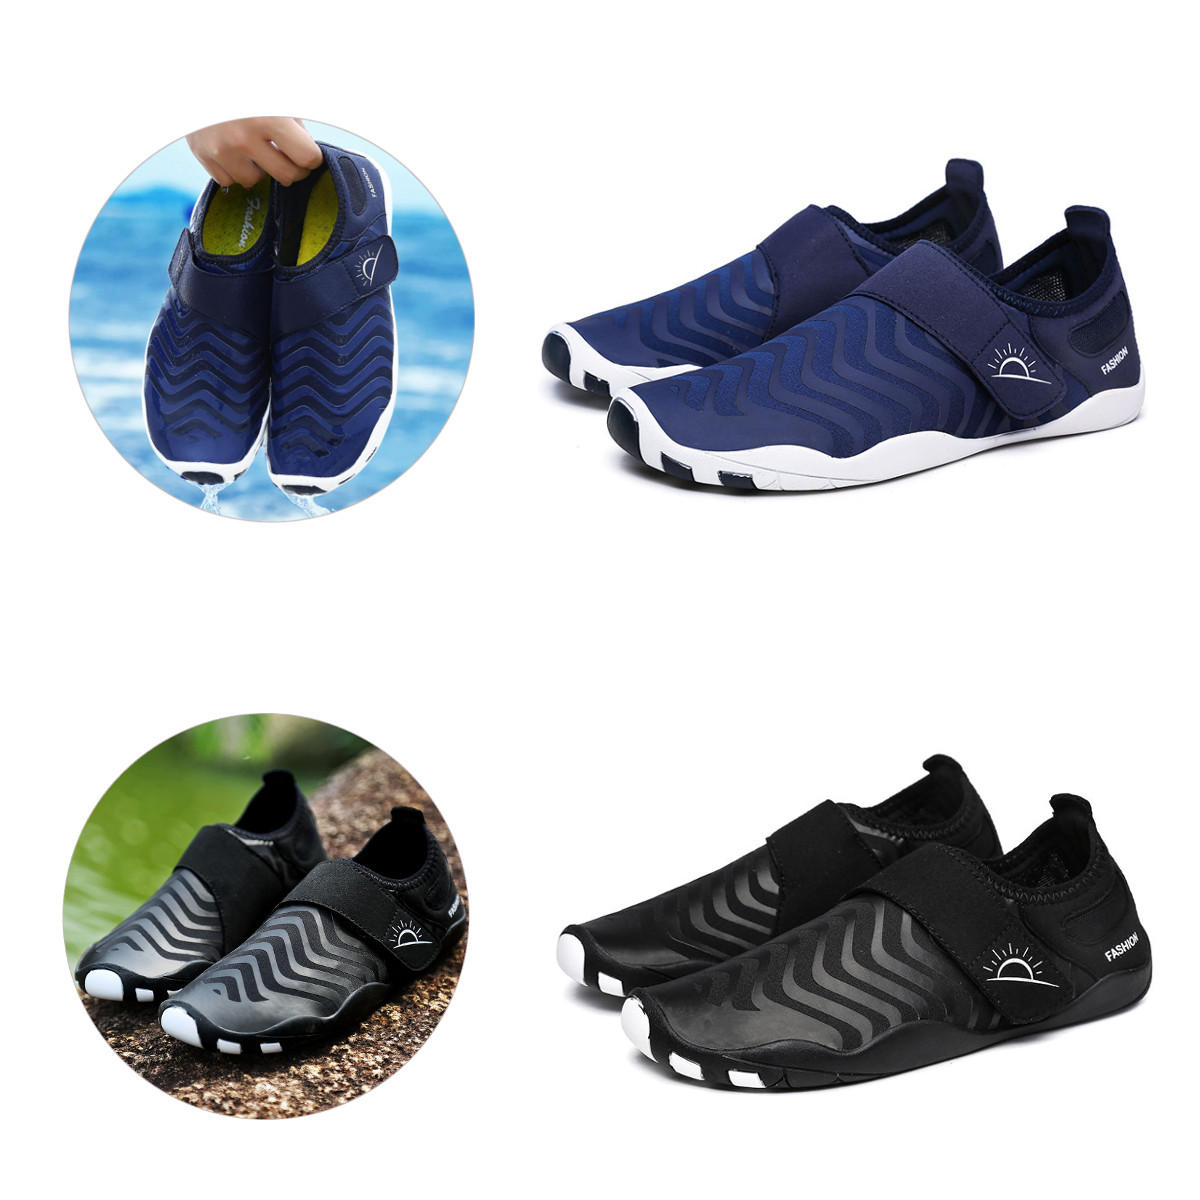 حذاء وادينج فائق الخفة مخطط الشكل، سريع الجفاف، سهل الارتداء، مناسب للرياضات الخارجية والسباحة واليوغا.